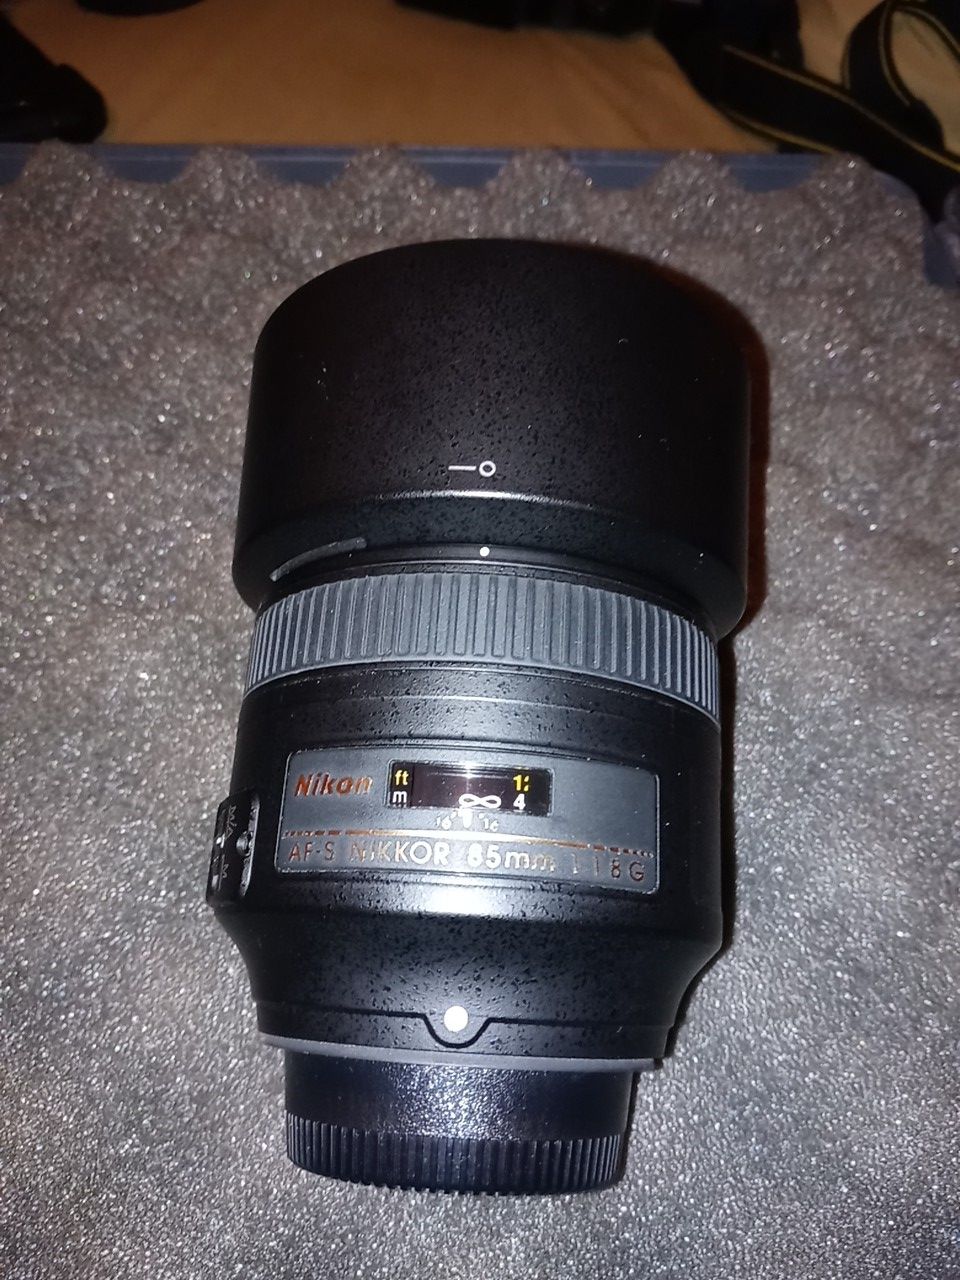 Nikon 85mm. 1.8